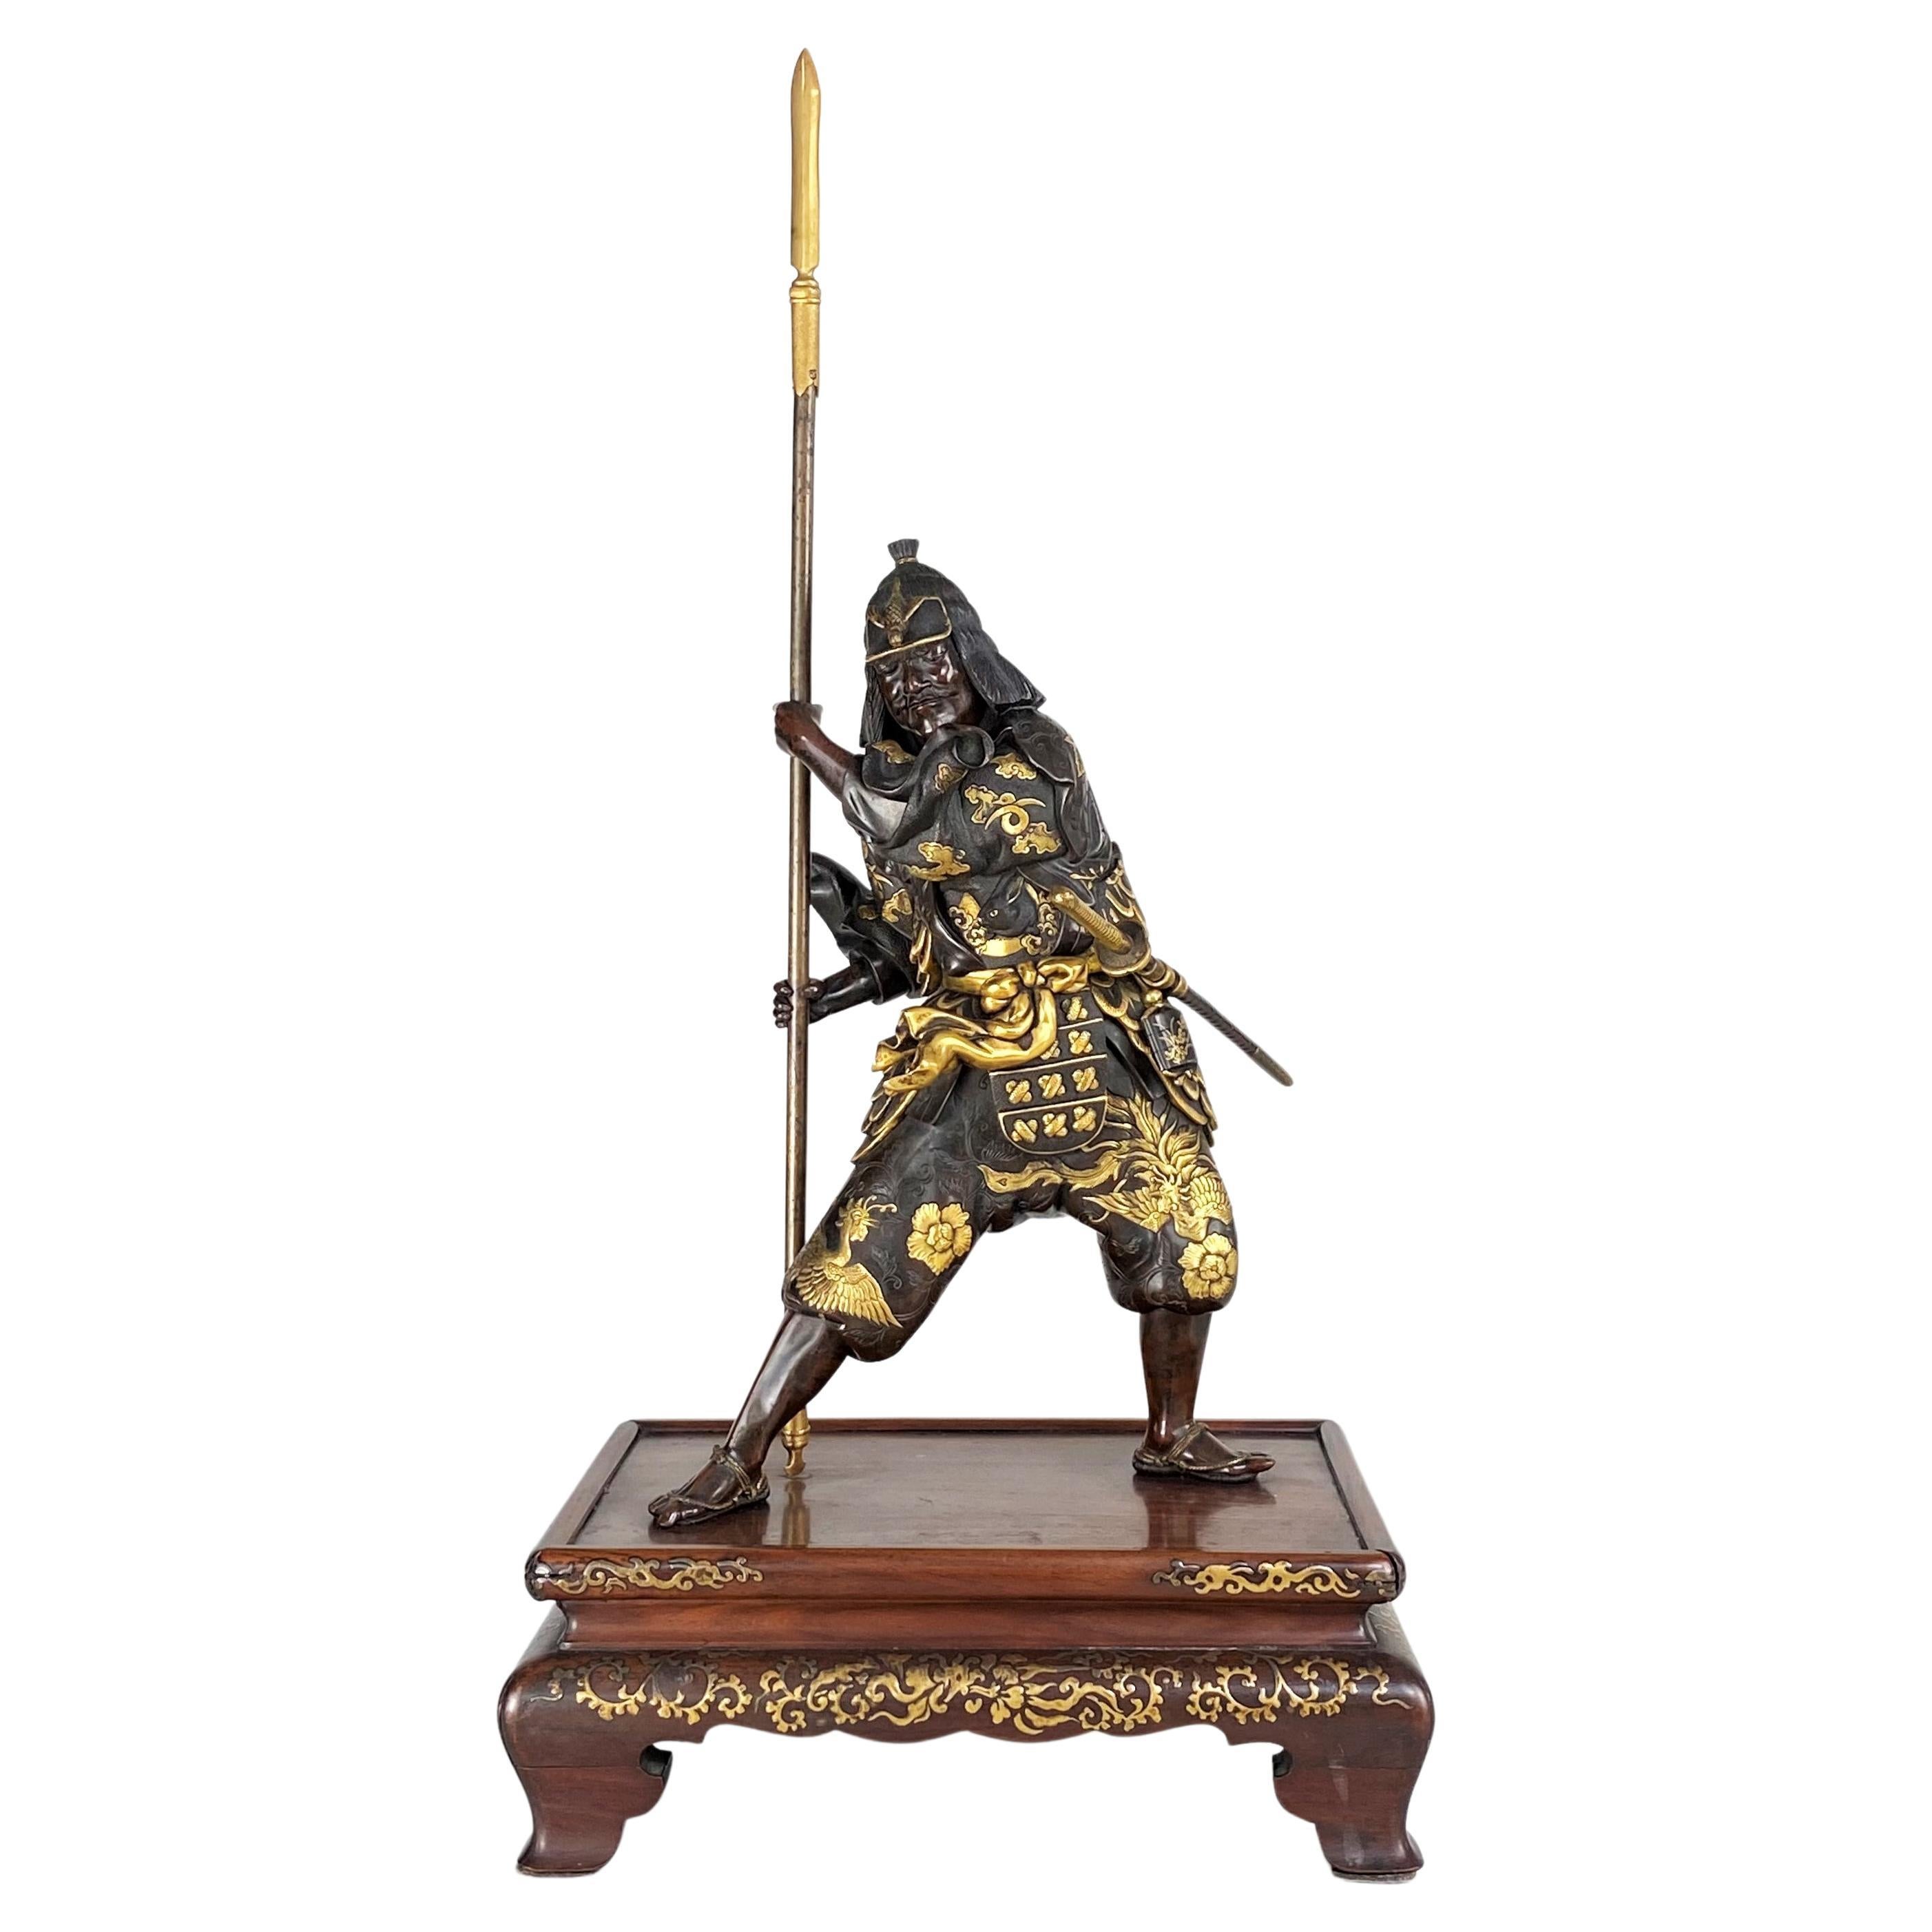 Okimono japonais d'un Samurai en bronze de la fin du 19e siècle